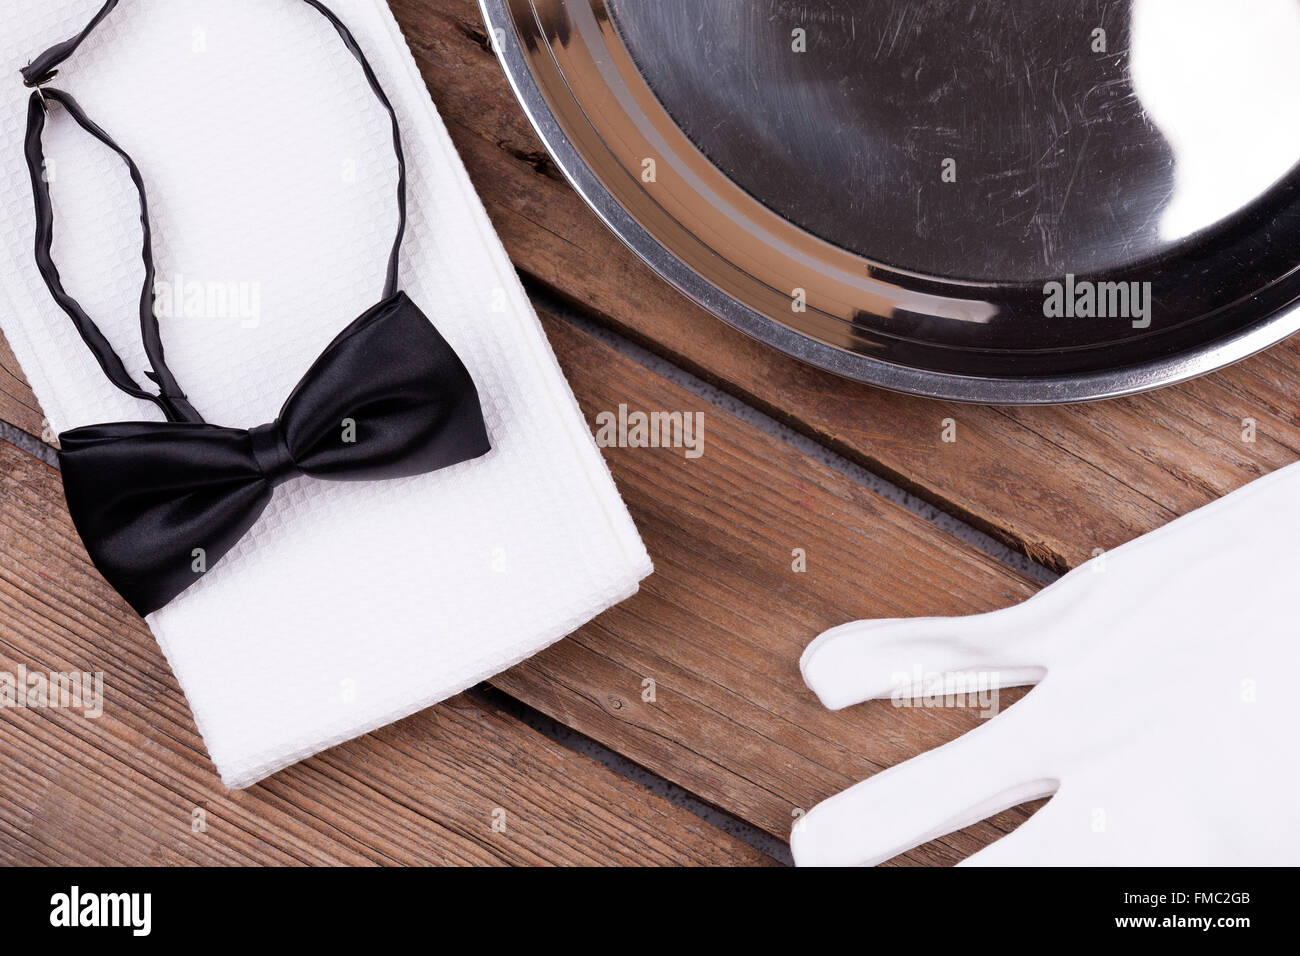 Draufsicht von einem Kellner Tablett, Fliege, Handschuhe und eine Serviette auf hölzernen Hintergrund Stockfoto